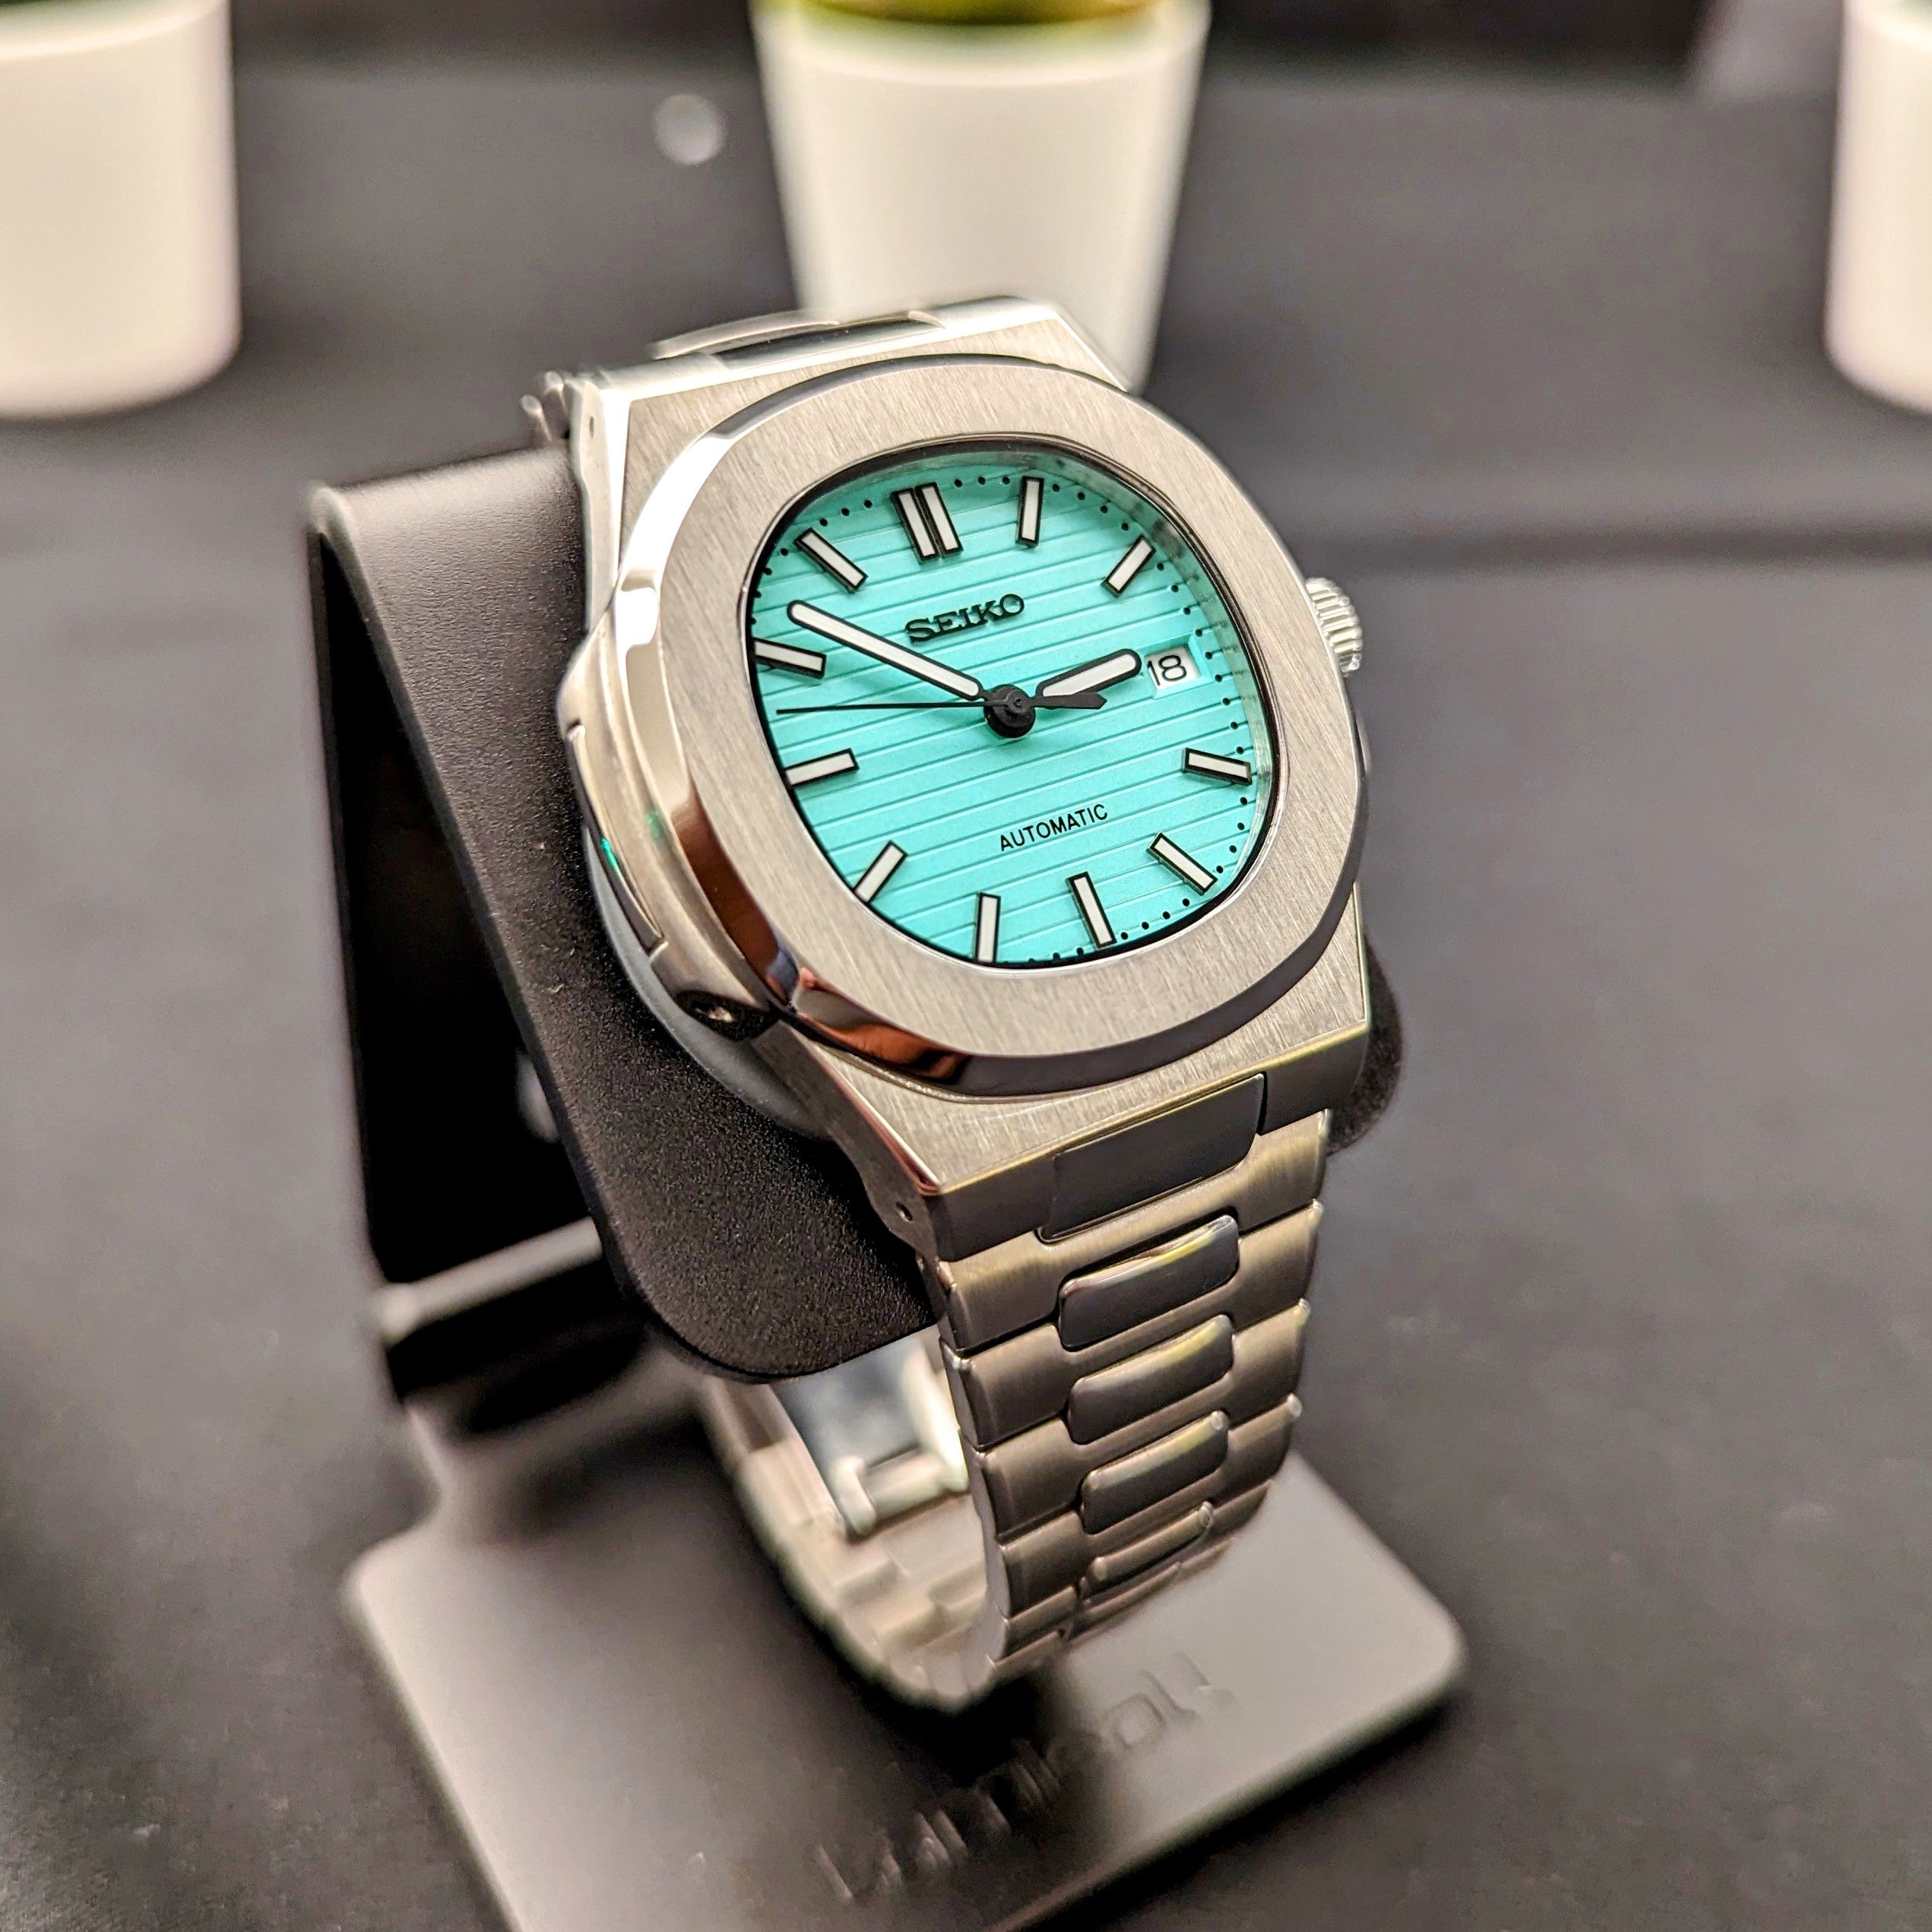 ノーチラスtype 腕時計 seiko セイコーnh35搭載 ターコイズ ブルー - 時計